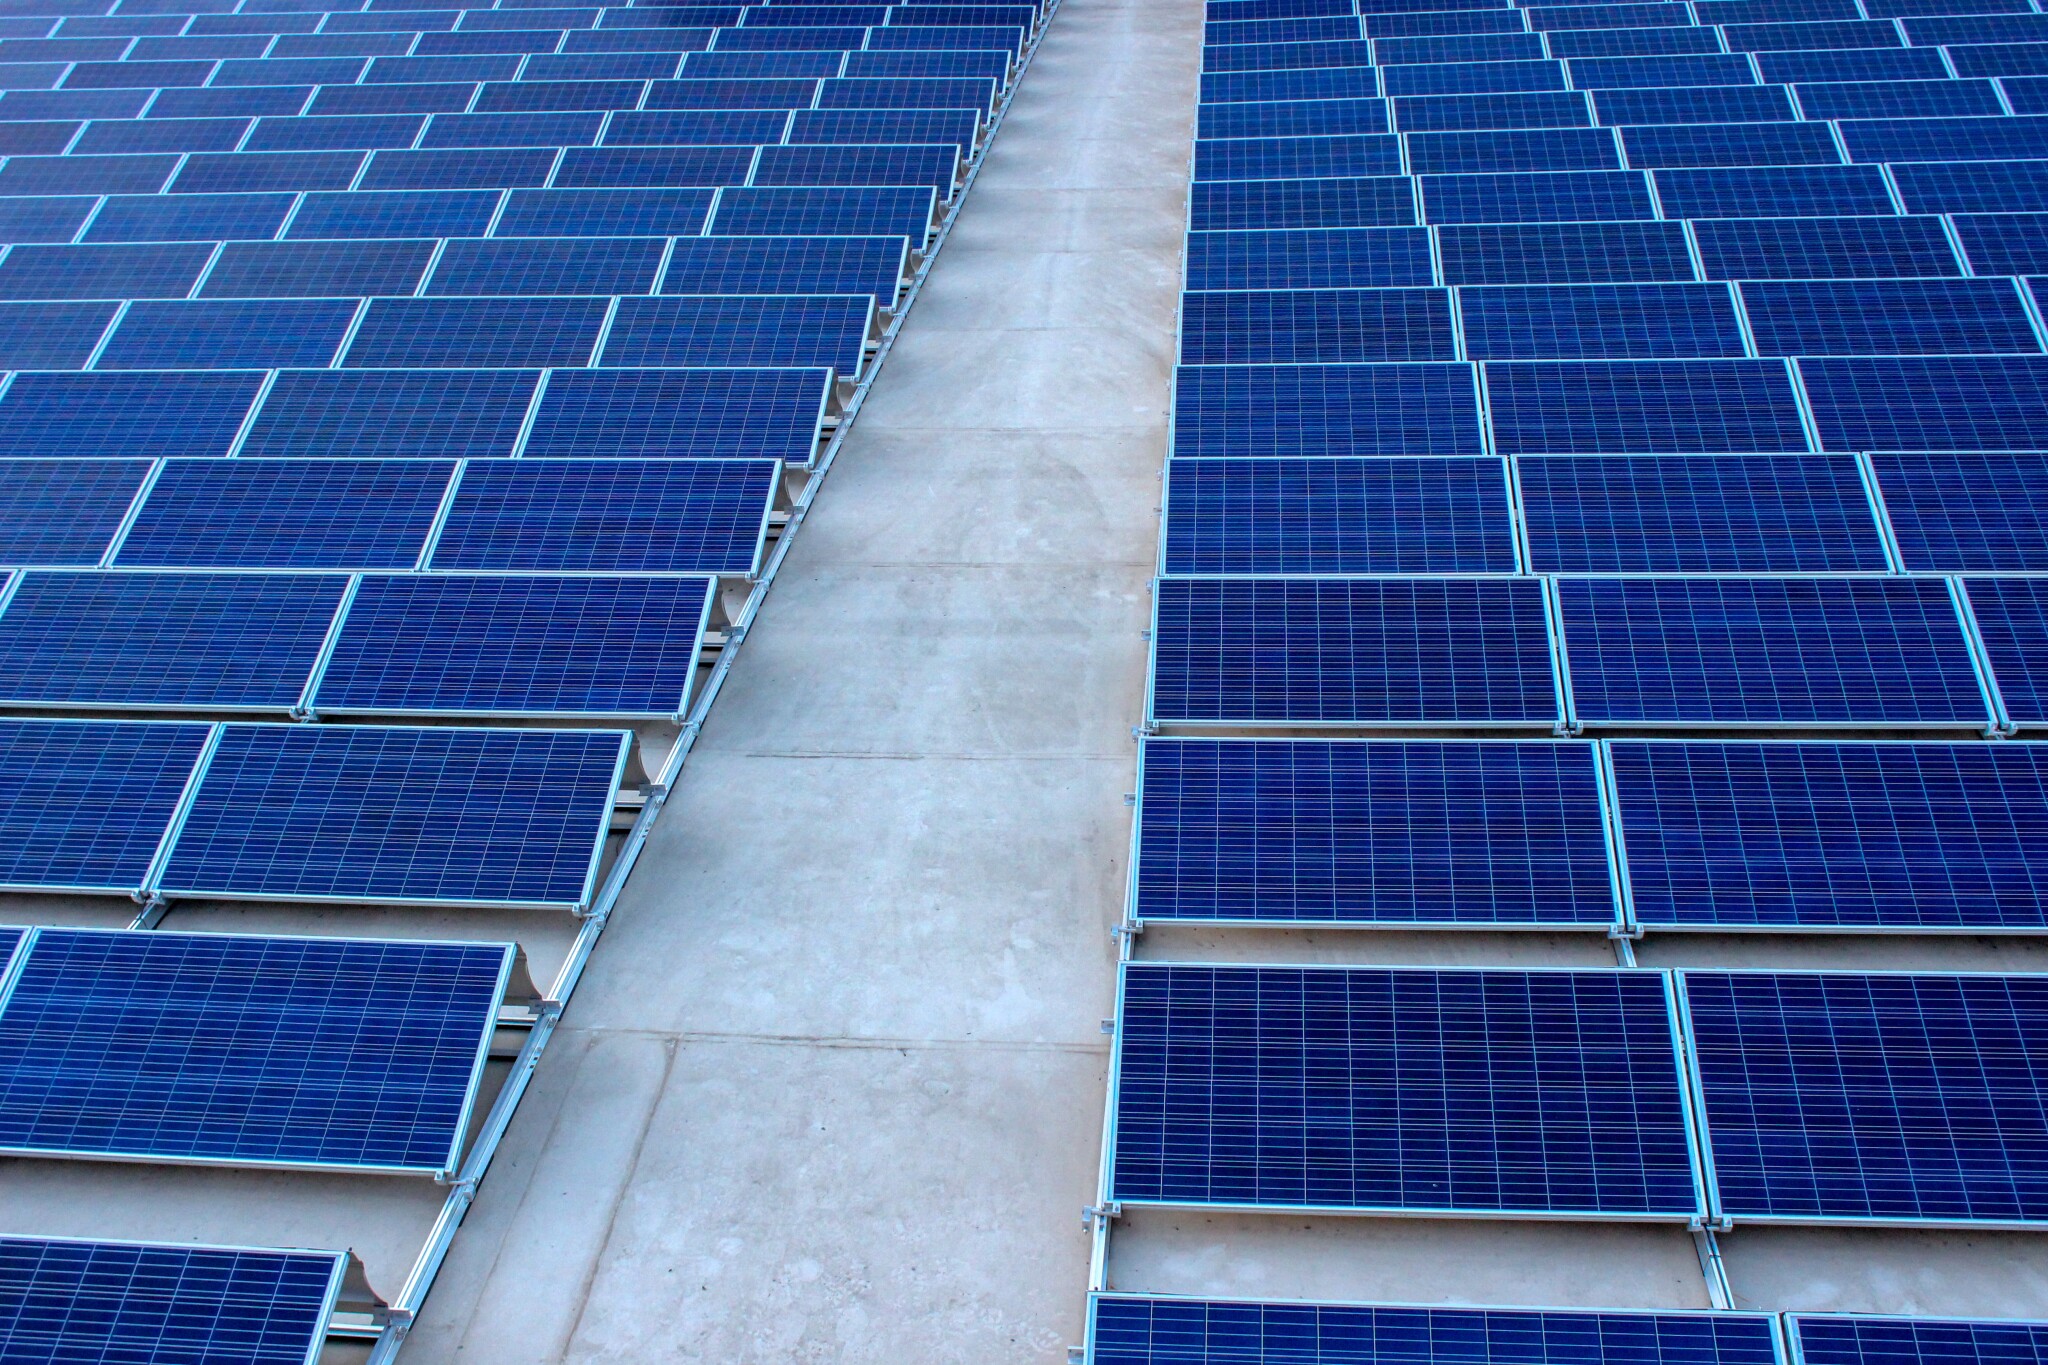 Ať žije slunce! Společnost Solek získala úvěr na výstavbu solárních elektráren v Chile